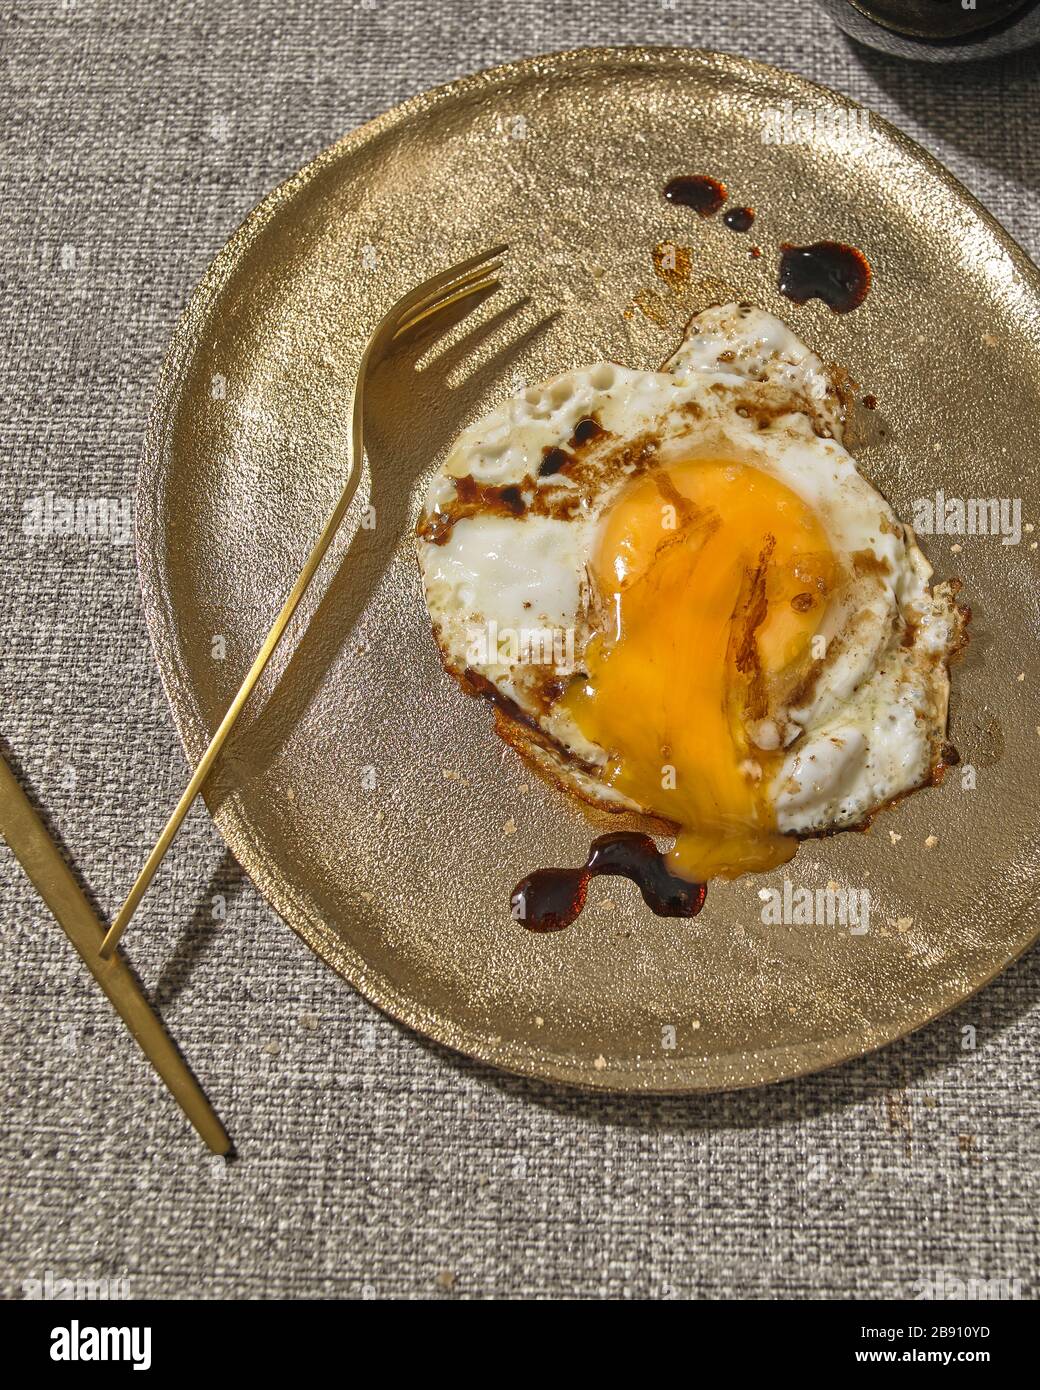 Uovo fritto con aceto balsamico e sale marino Foto Stock